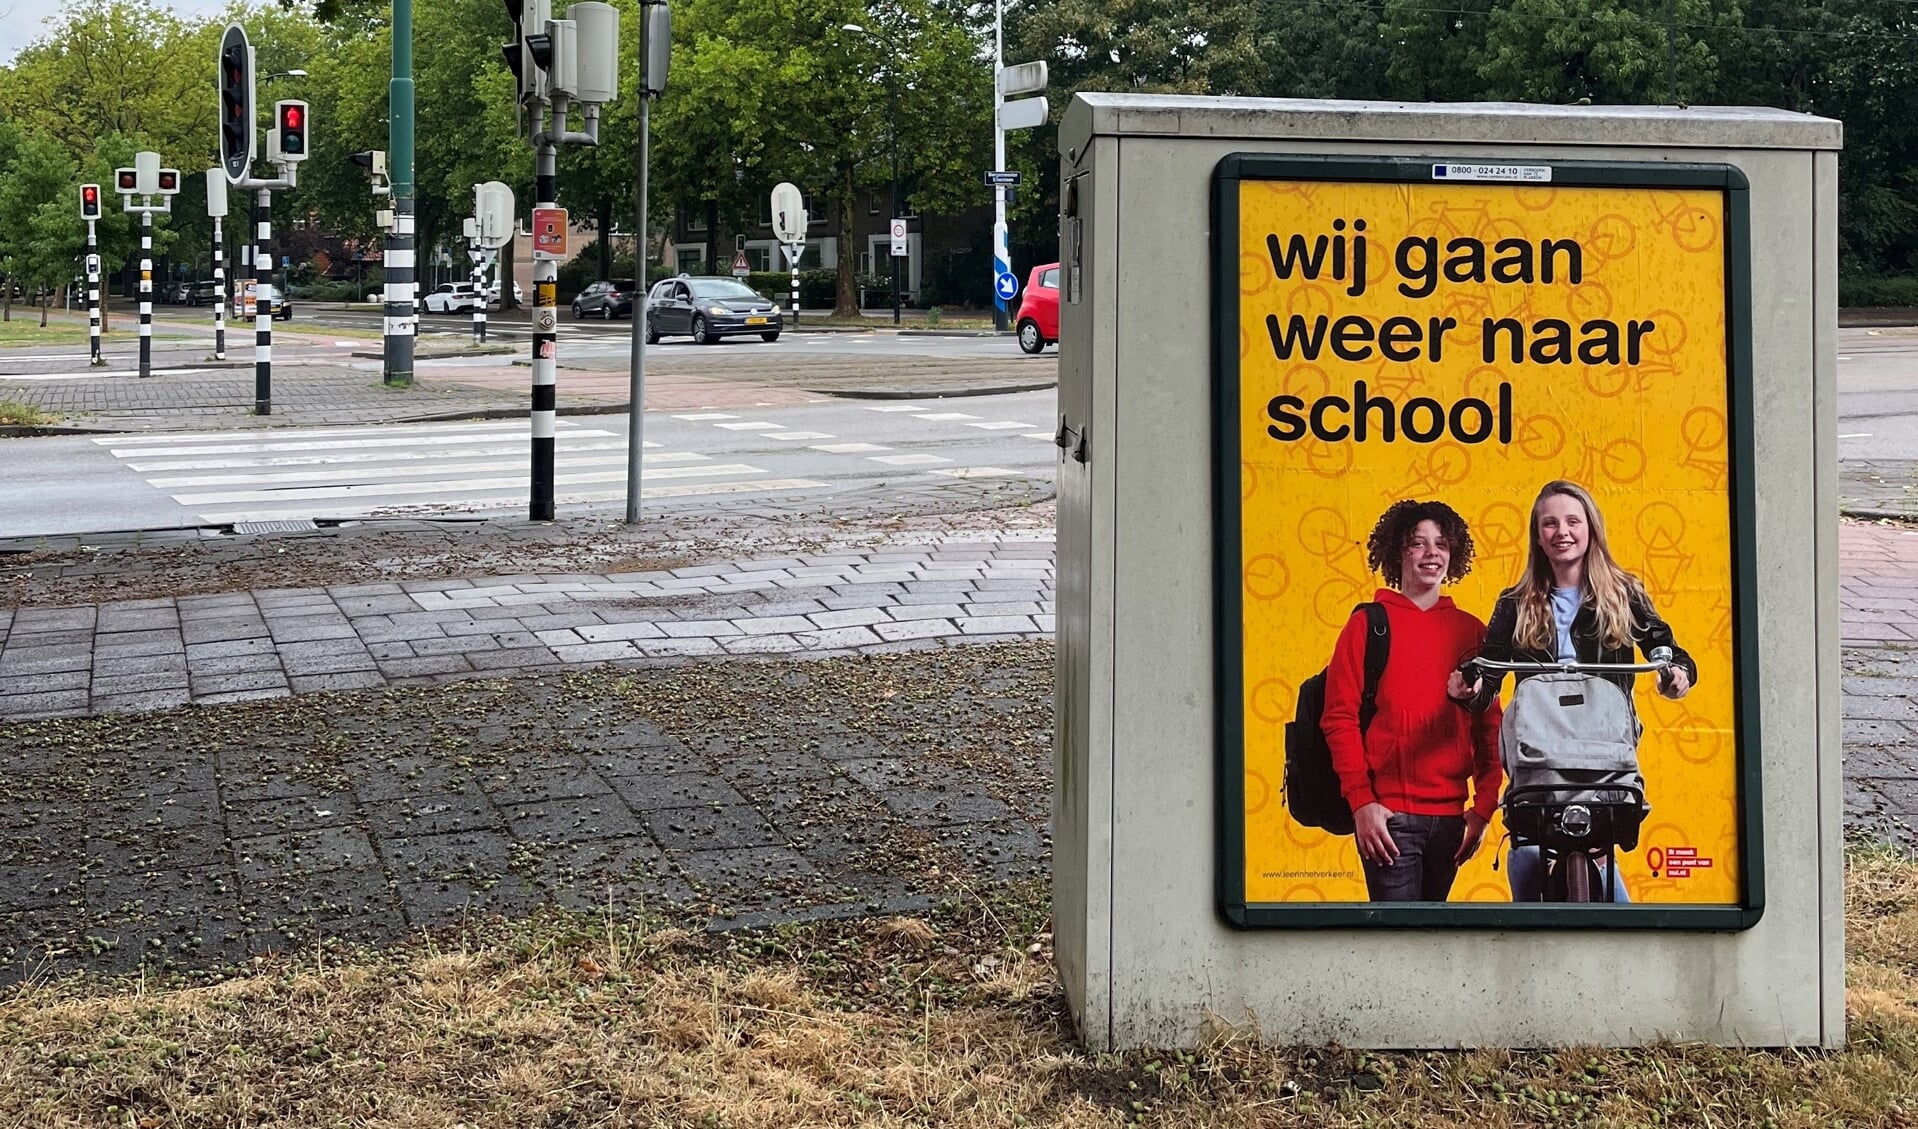 Verspreid over de stad zijn verschillende borden en posters geplaatst met de tekst ‘Wij gaan weer naar school’. 